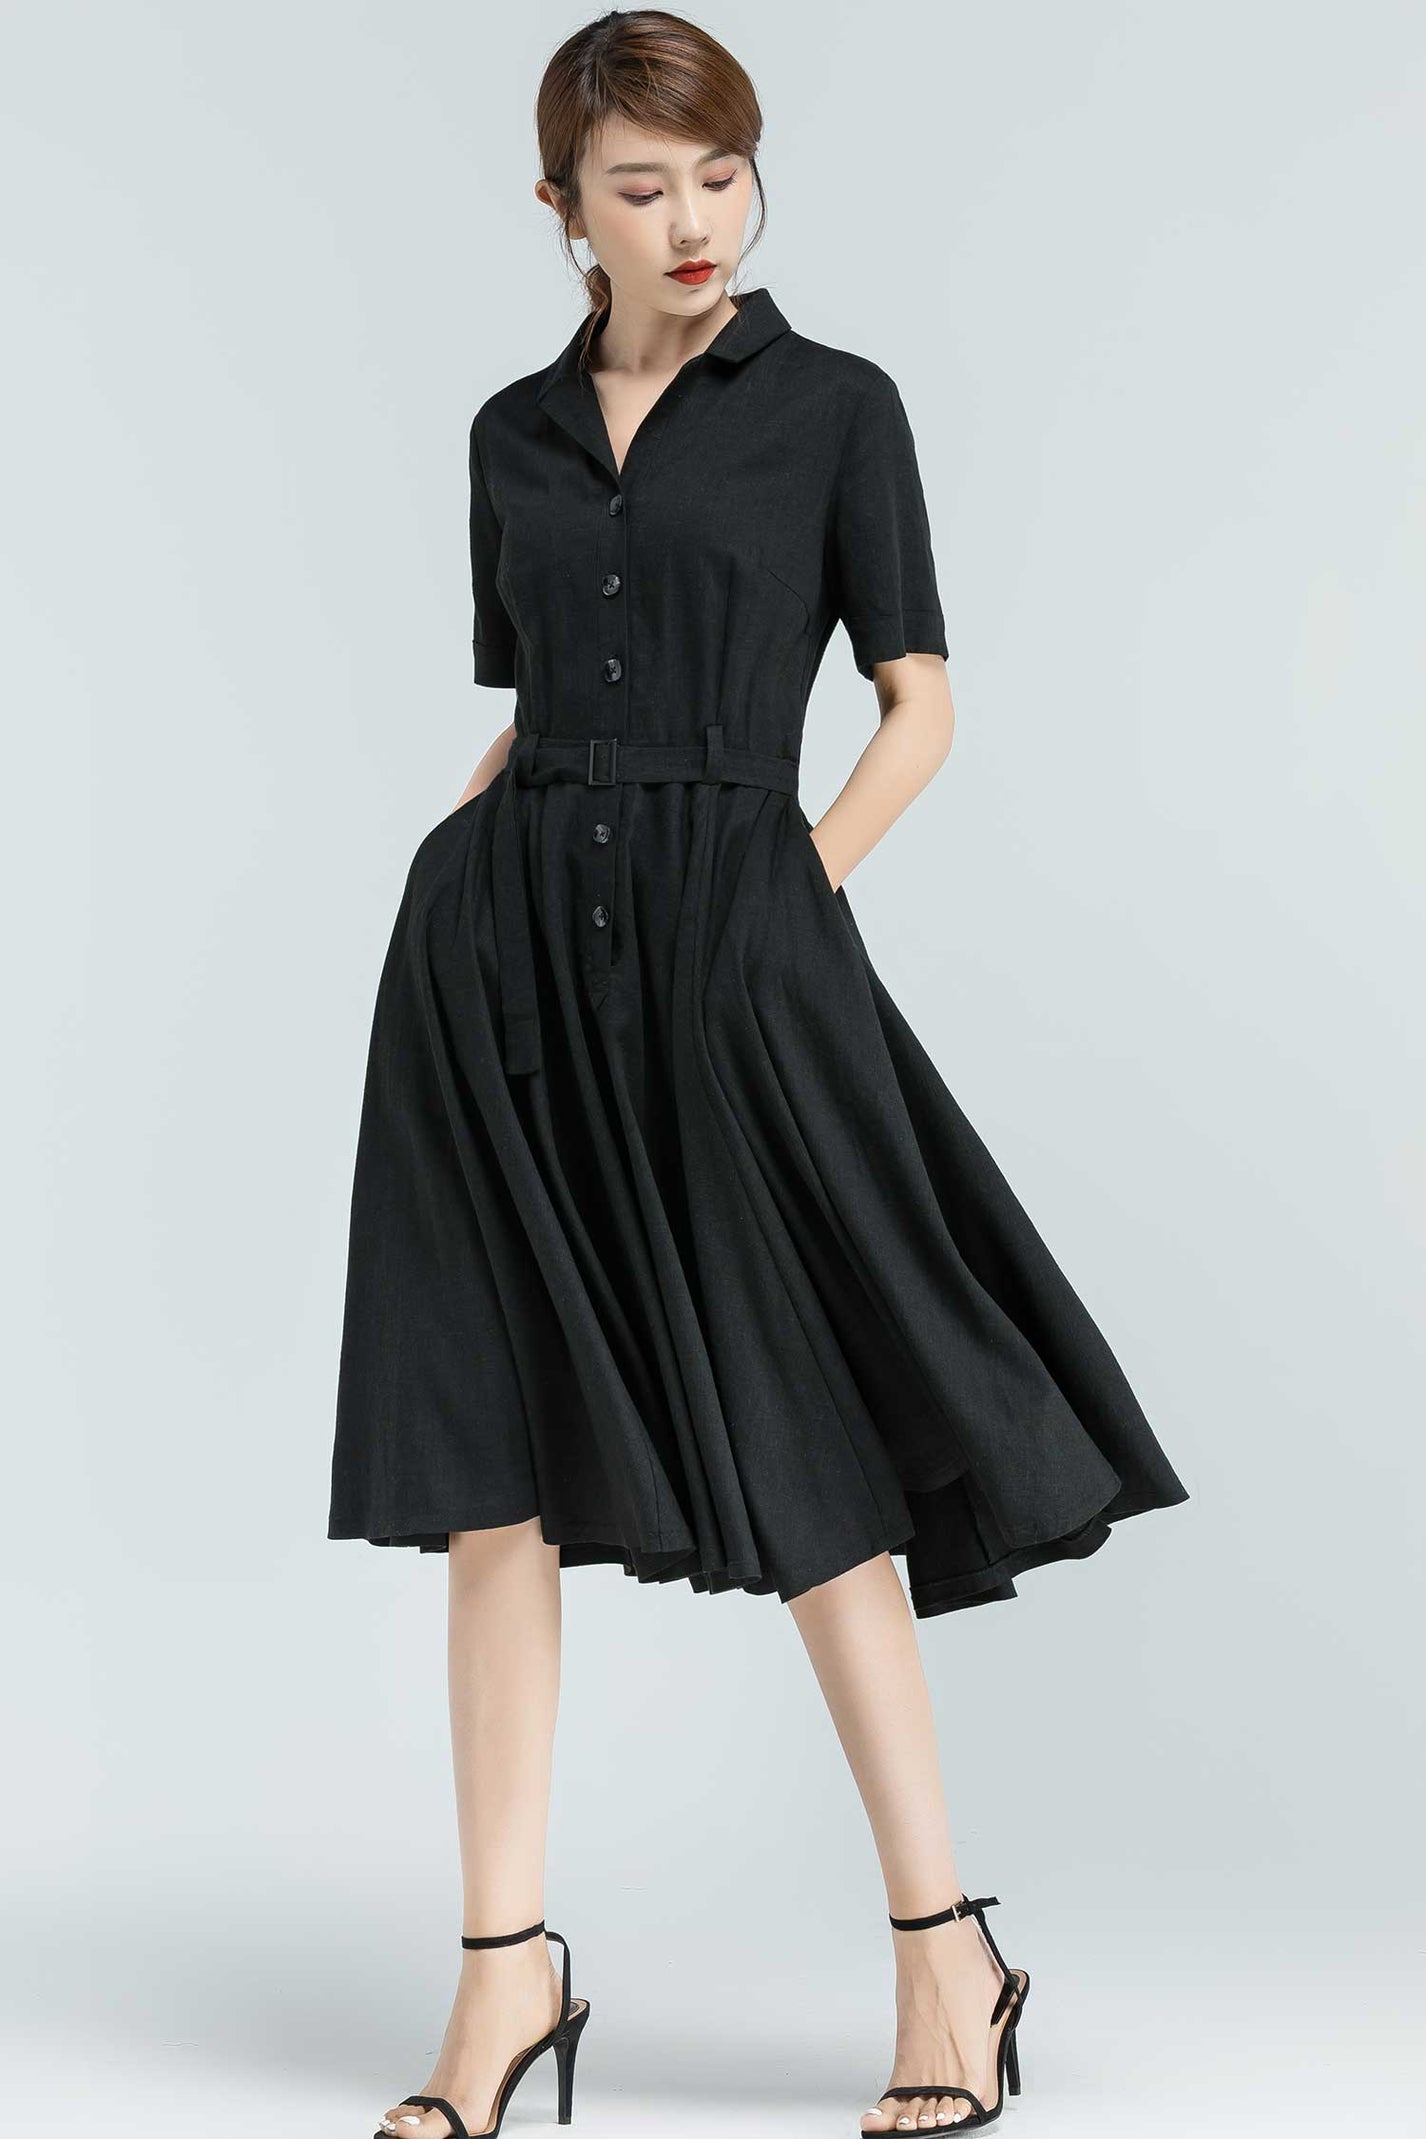 50s inspired swing shirt dress 2318# – XiaoLizi